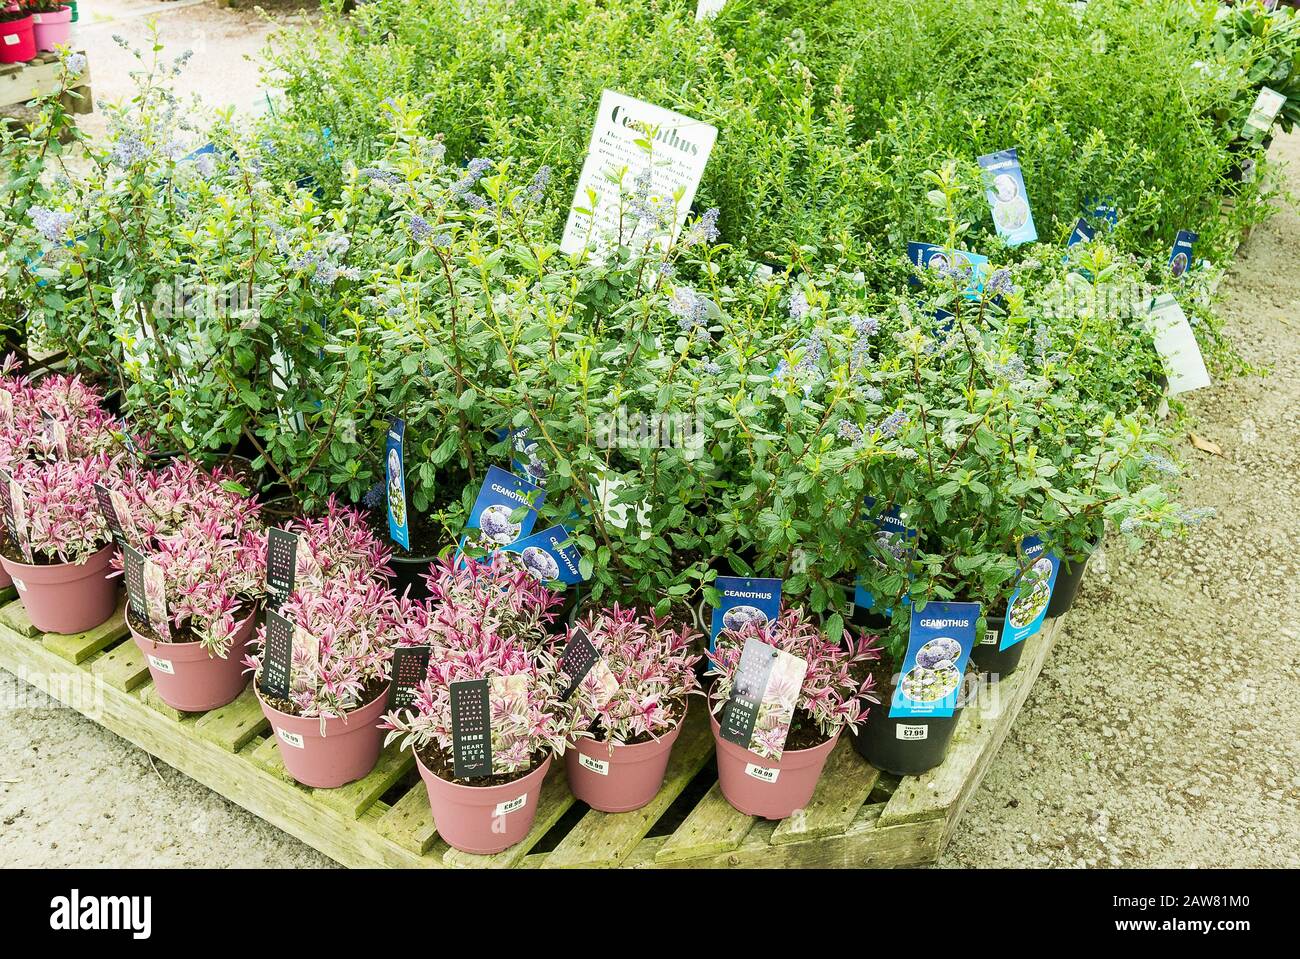 Petits pots de plantes Ceanothus et Hebe dans un jardin anglais en attente de clients Banque D'Images